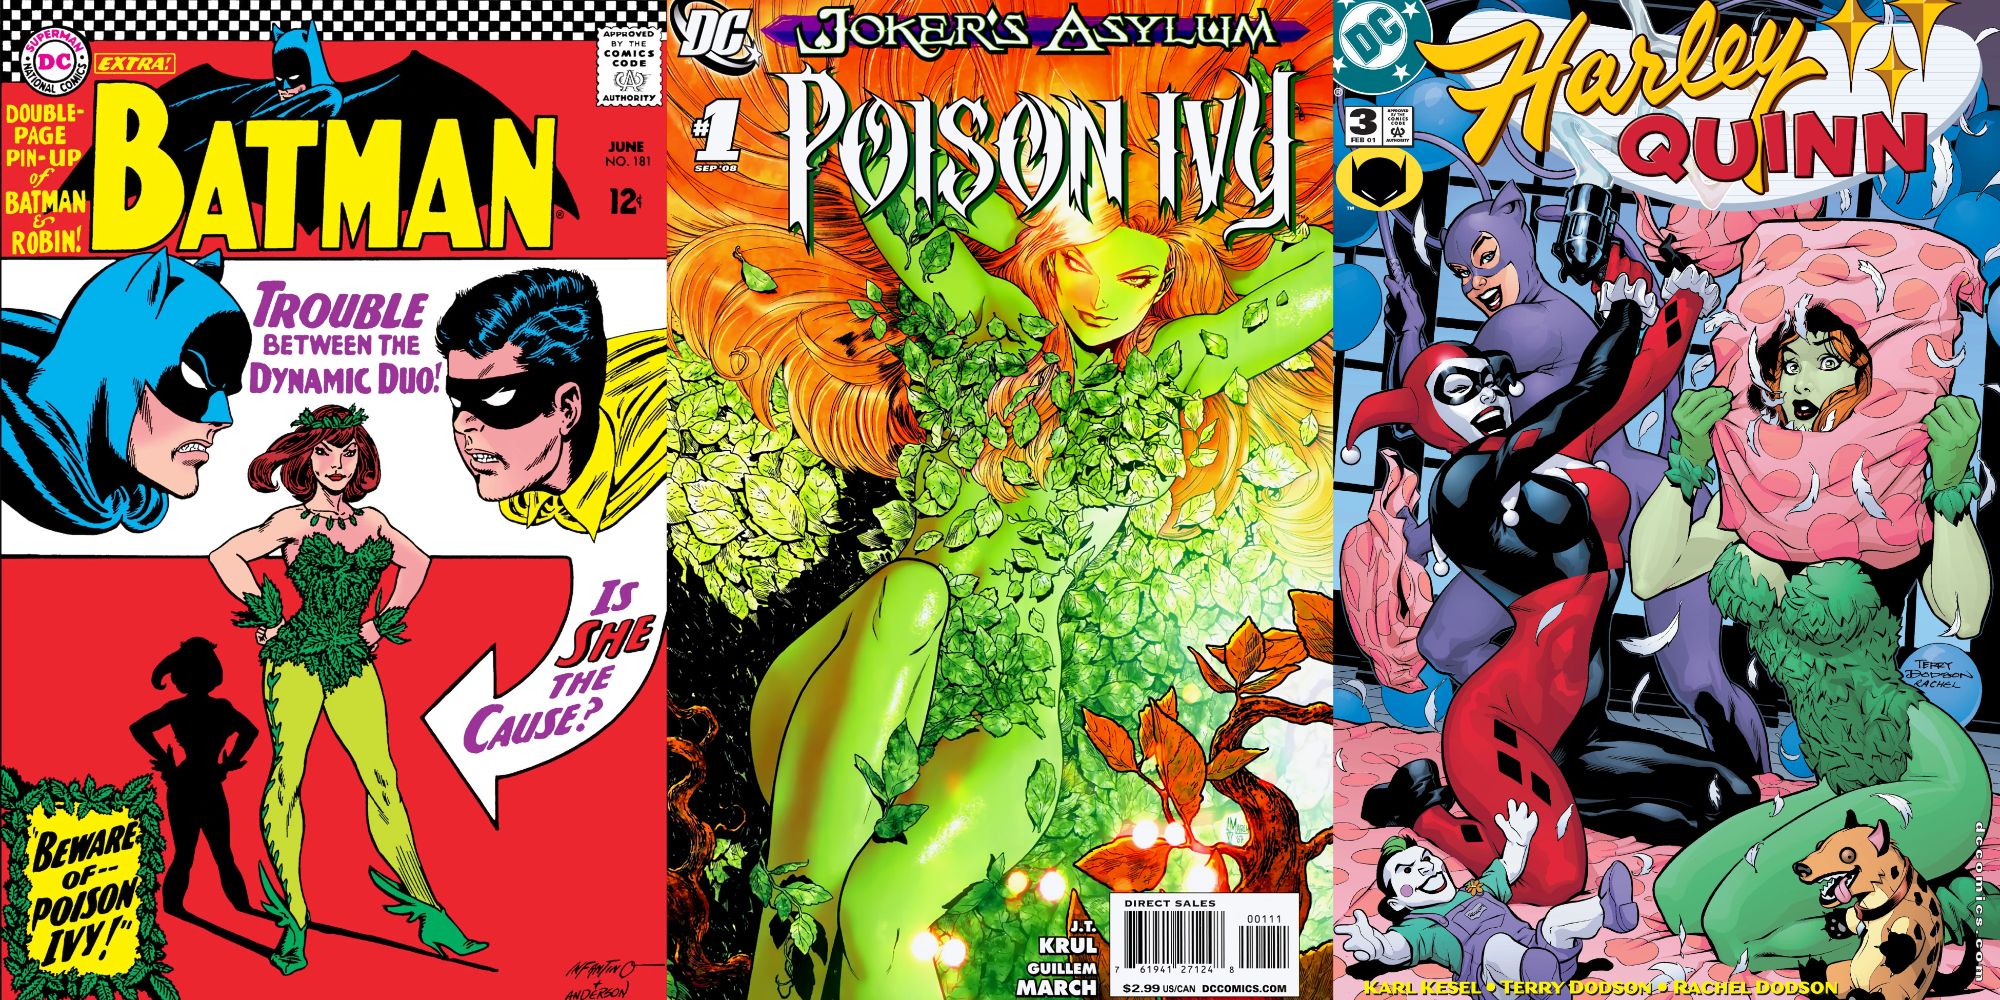 Split image of covers of Batman 181, Joker's Asylum: Poison Ivy, and Harley Quinn 3.